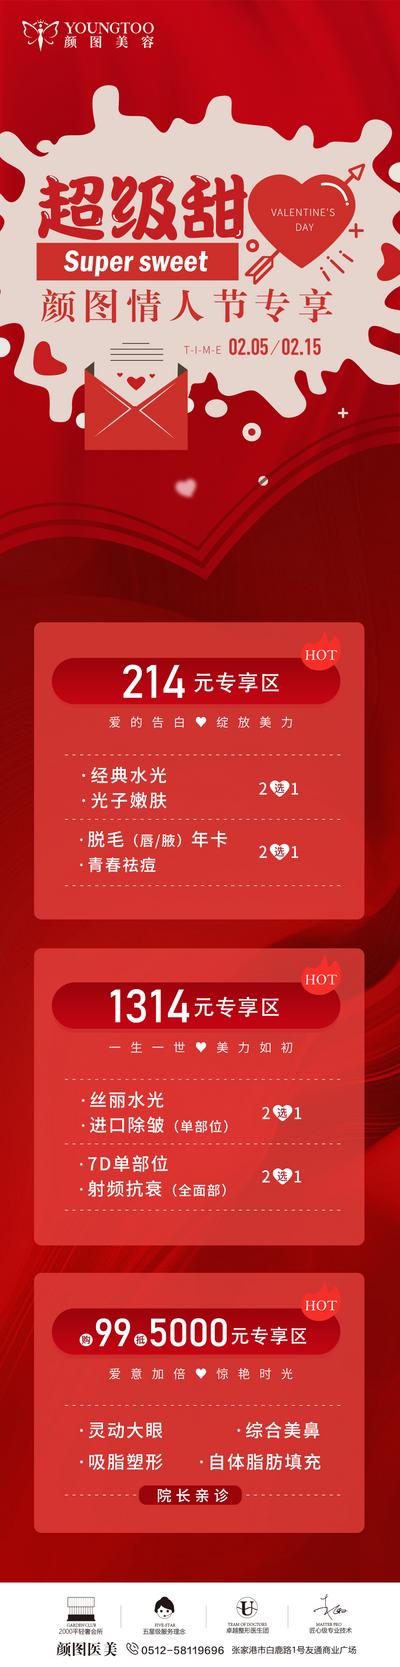 南门网 广告 推文 长图 情人节 医美 活动 专题 甜蜜 红色 爱心